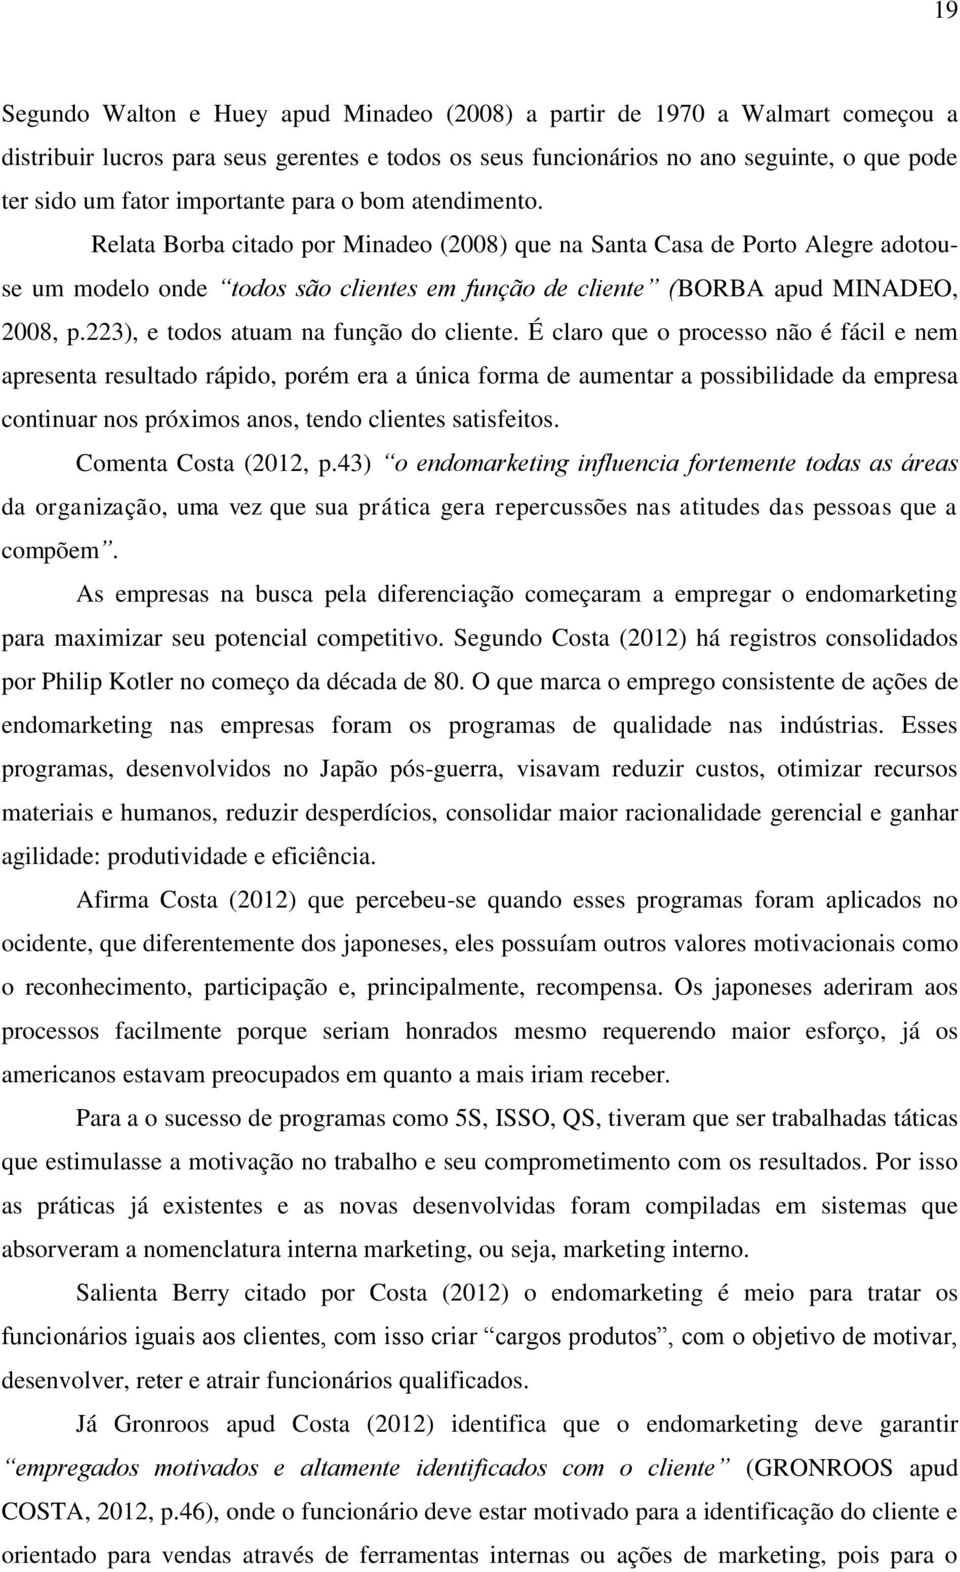 Relata Borba citado por Minadeo (2008) que na Santa Casa de Porto Alegre adotouse um modelo onde todos são clientes em função de cliente (BORBA apud MINADEO, 2008, p.